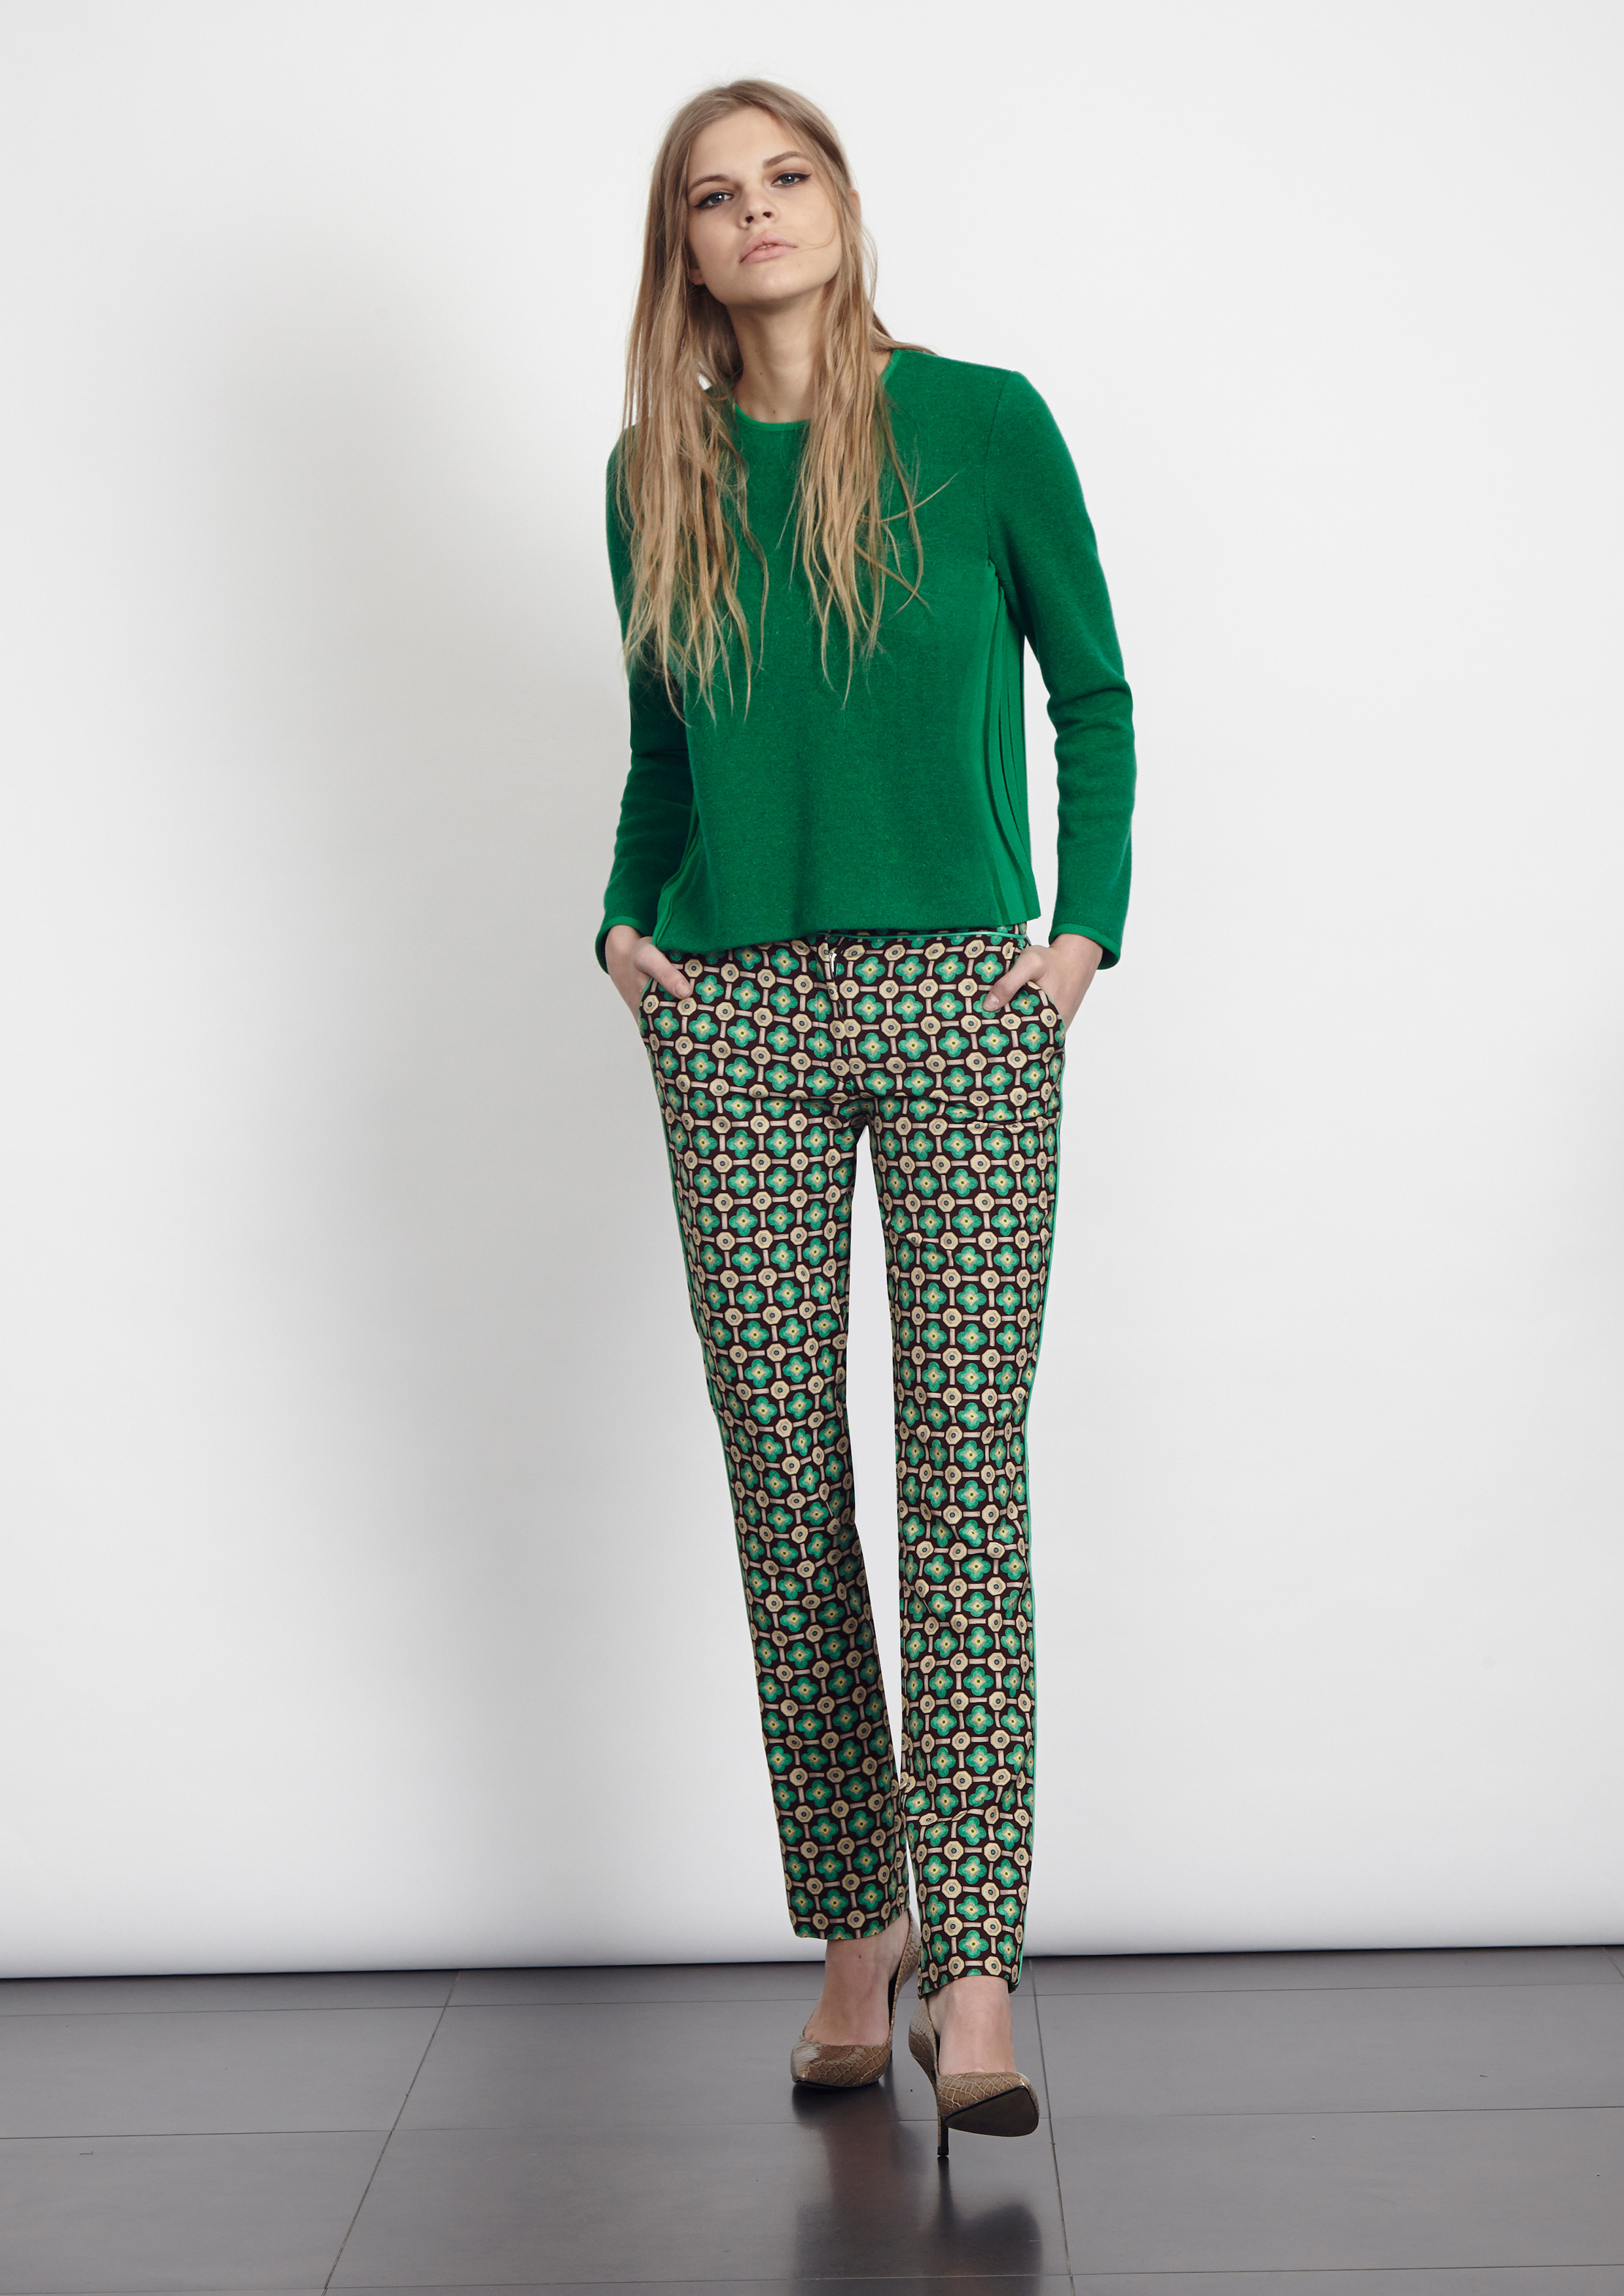 https://www.albaconde.com/look-alta/invierno-2016/pantalon-estampado-con-jersey-verde